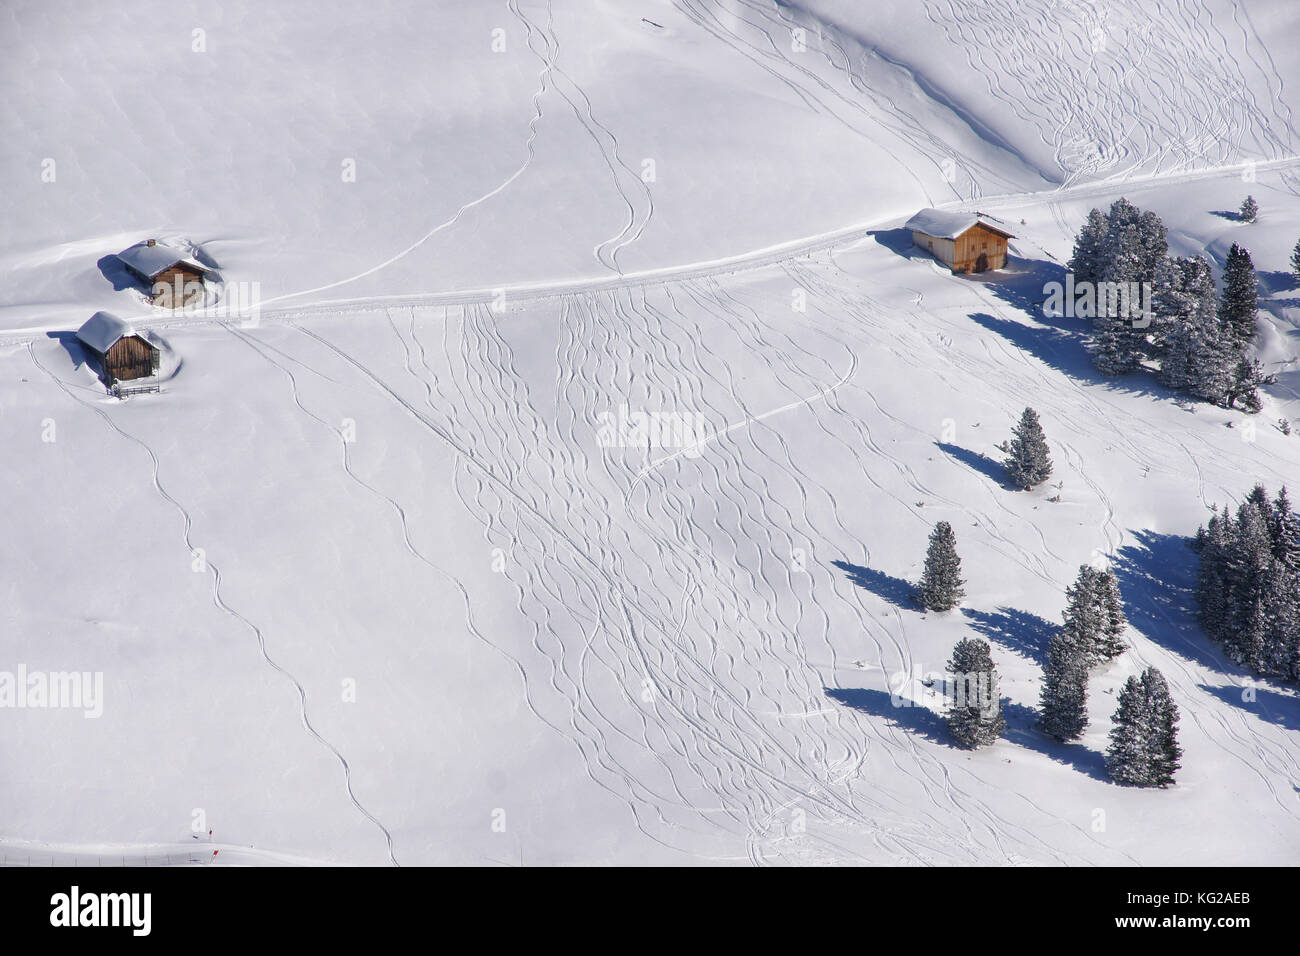 Muster in den Schnee, die Skifahrer, Snowboarder und Motorschlitten. Winterlandschaft mit Schnee bedeckt, Bäume und Hütten Stockfoto